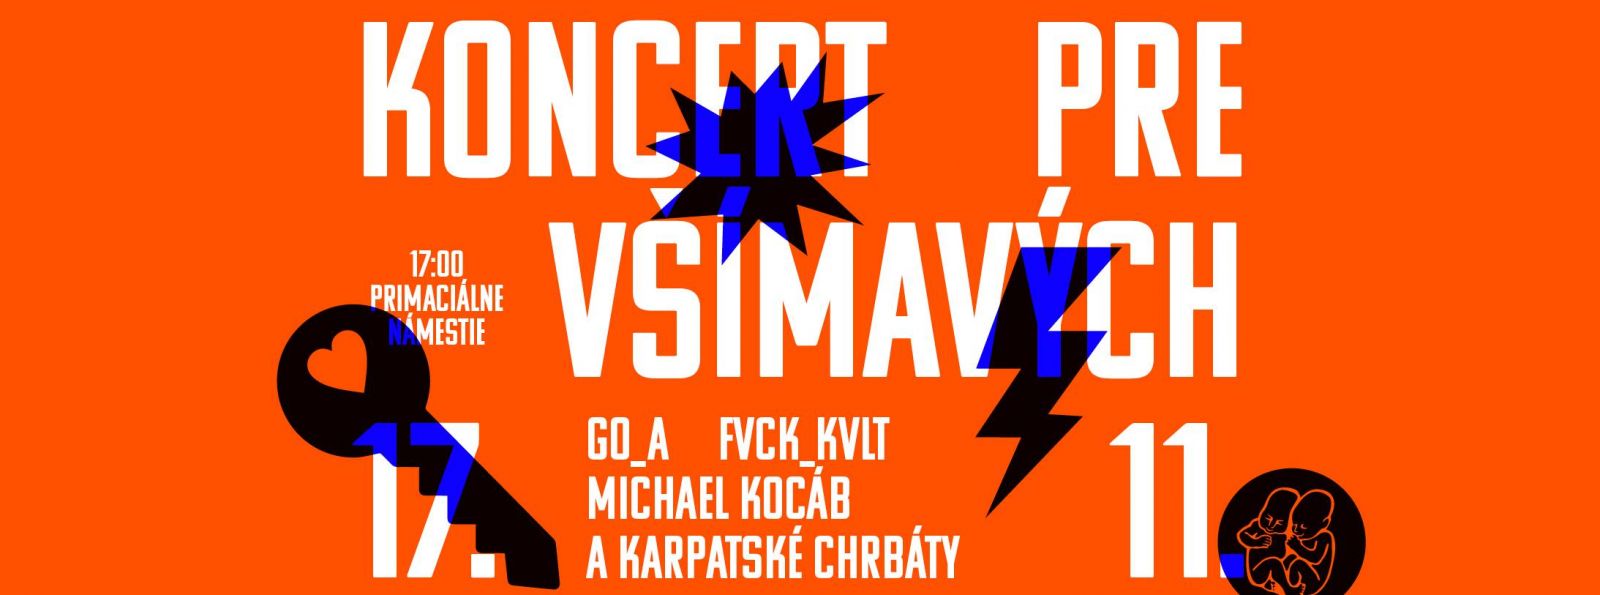 Na Koncerte pre všímavých už tento piatok vystúpia Michael Kocáb a Karpatské chrbáty, FVCK_KVLT, ukrajinskí Go_A a ďalší.